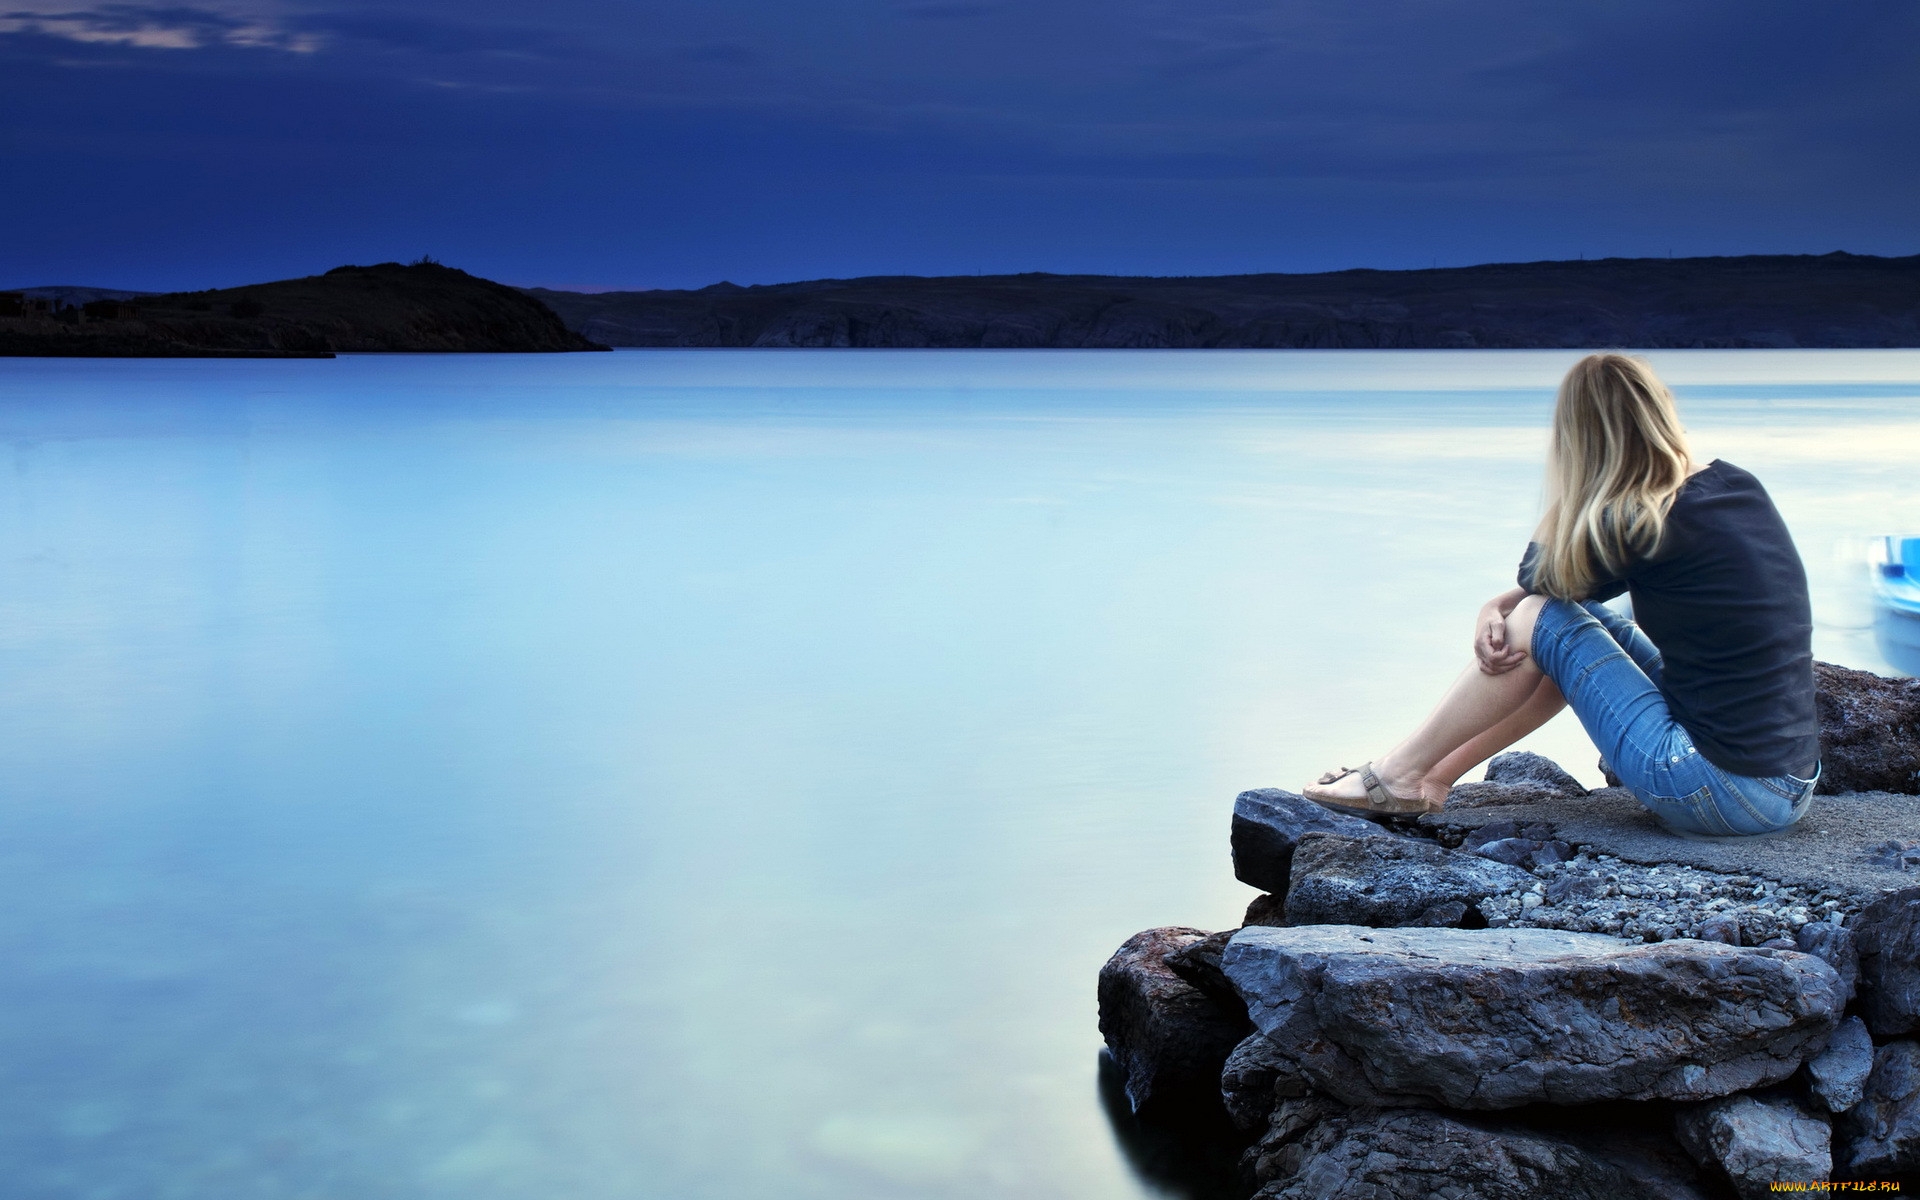 Вижу себя на берегу. Девушка на берегу моря. Девушка сидит на берегу. Девушка сидит на камнях у моря. Одинокая девушка у моря.